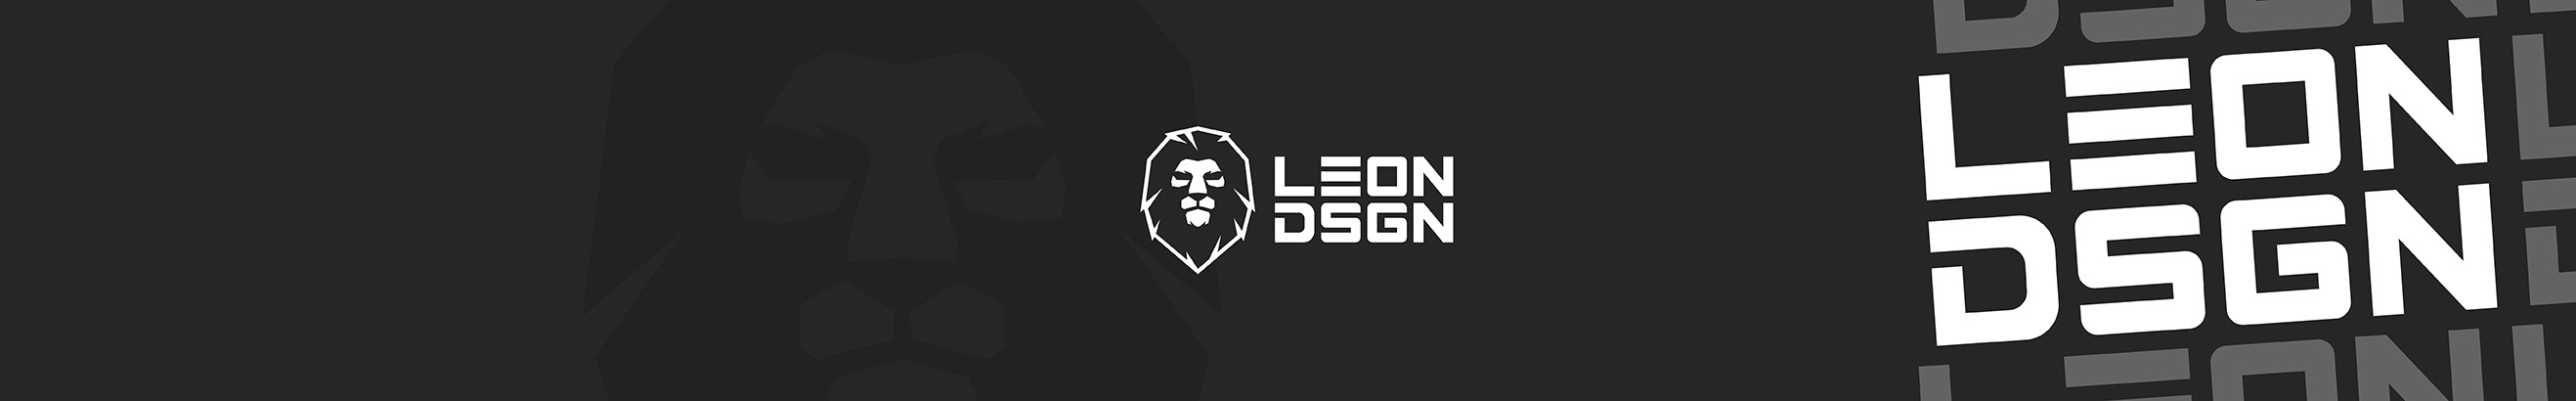 LEON DSGN's profile banner